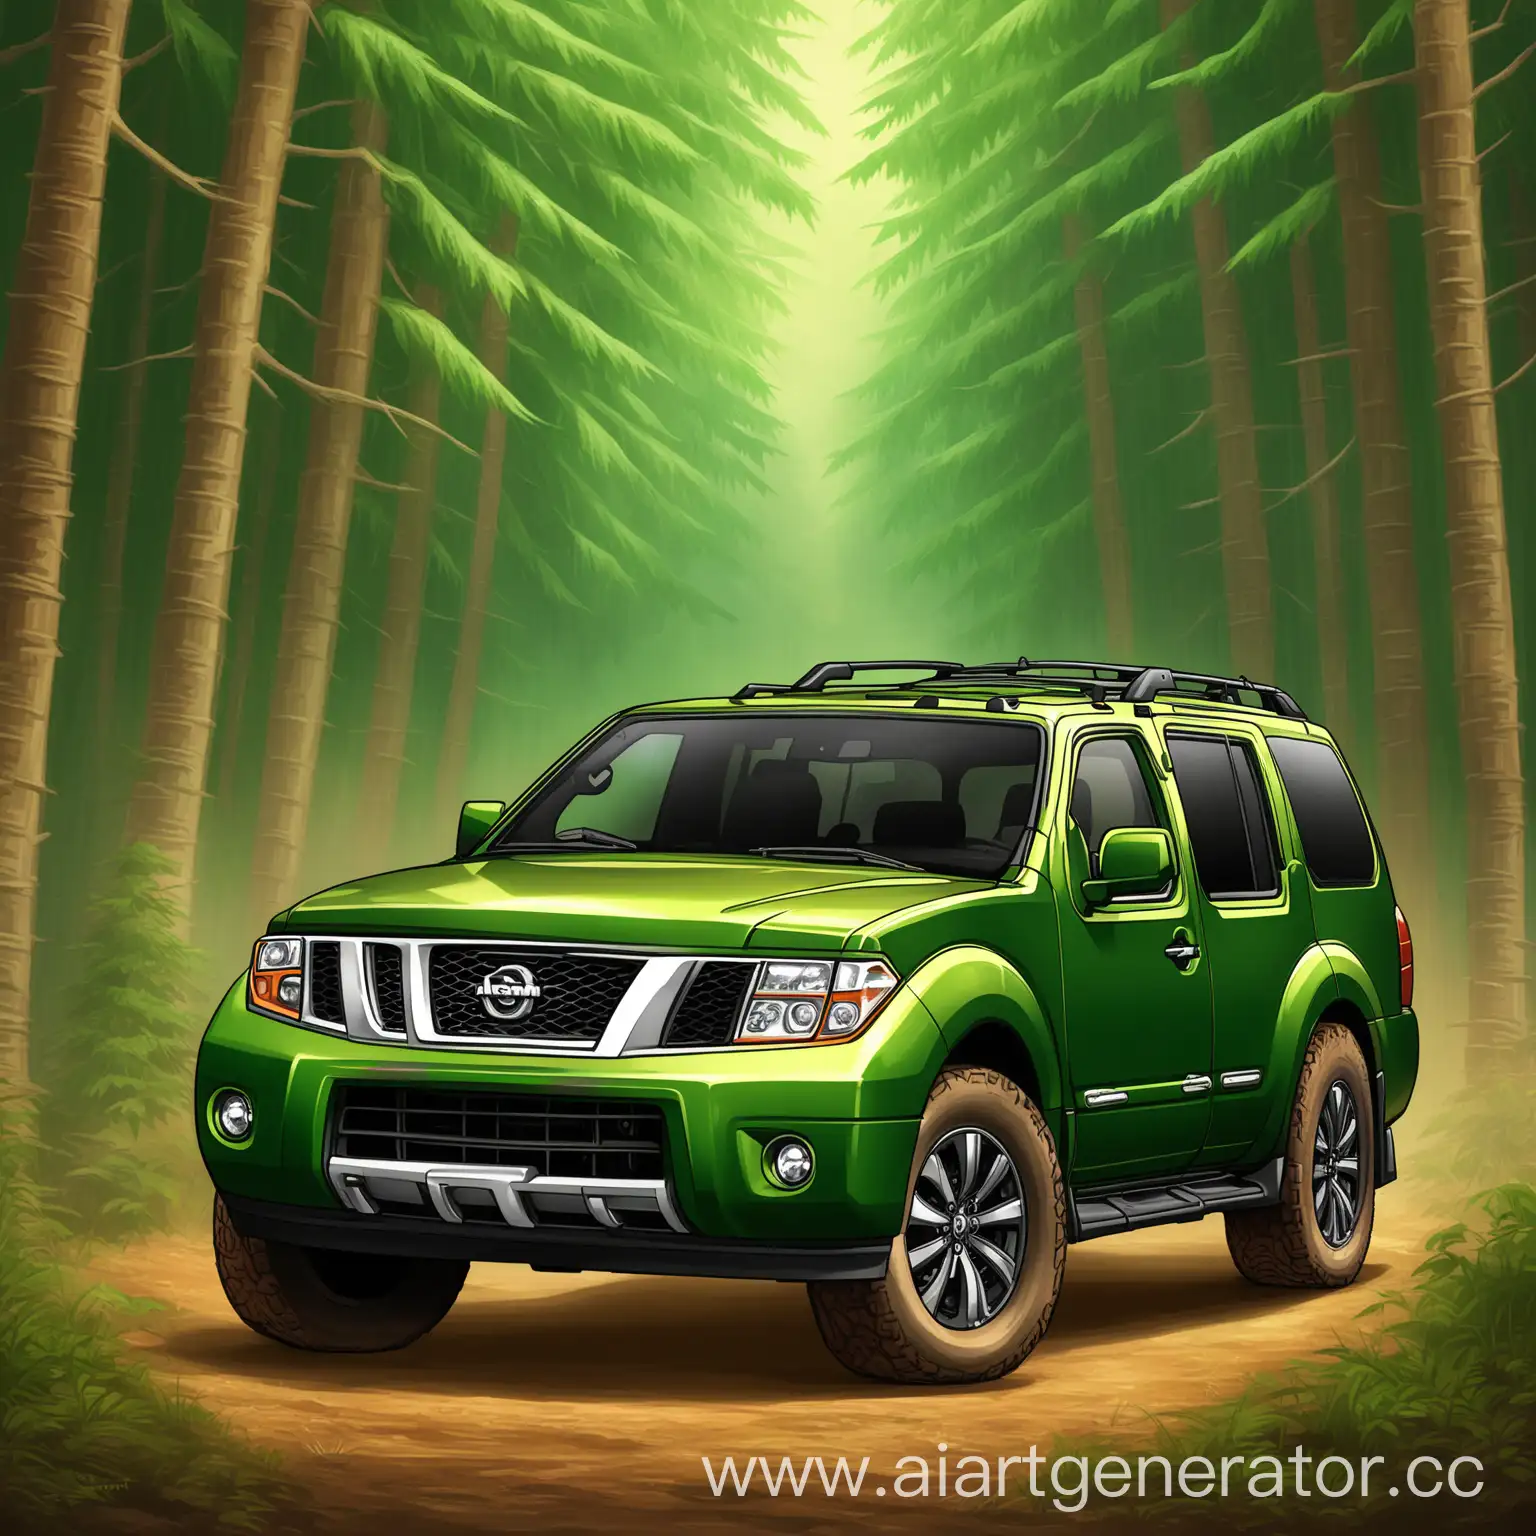 Green-Nissan-Pathfinder-SUV-Artwork